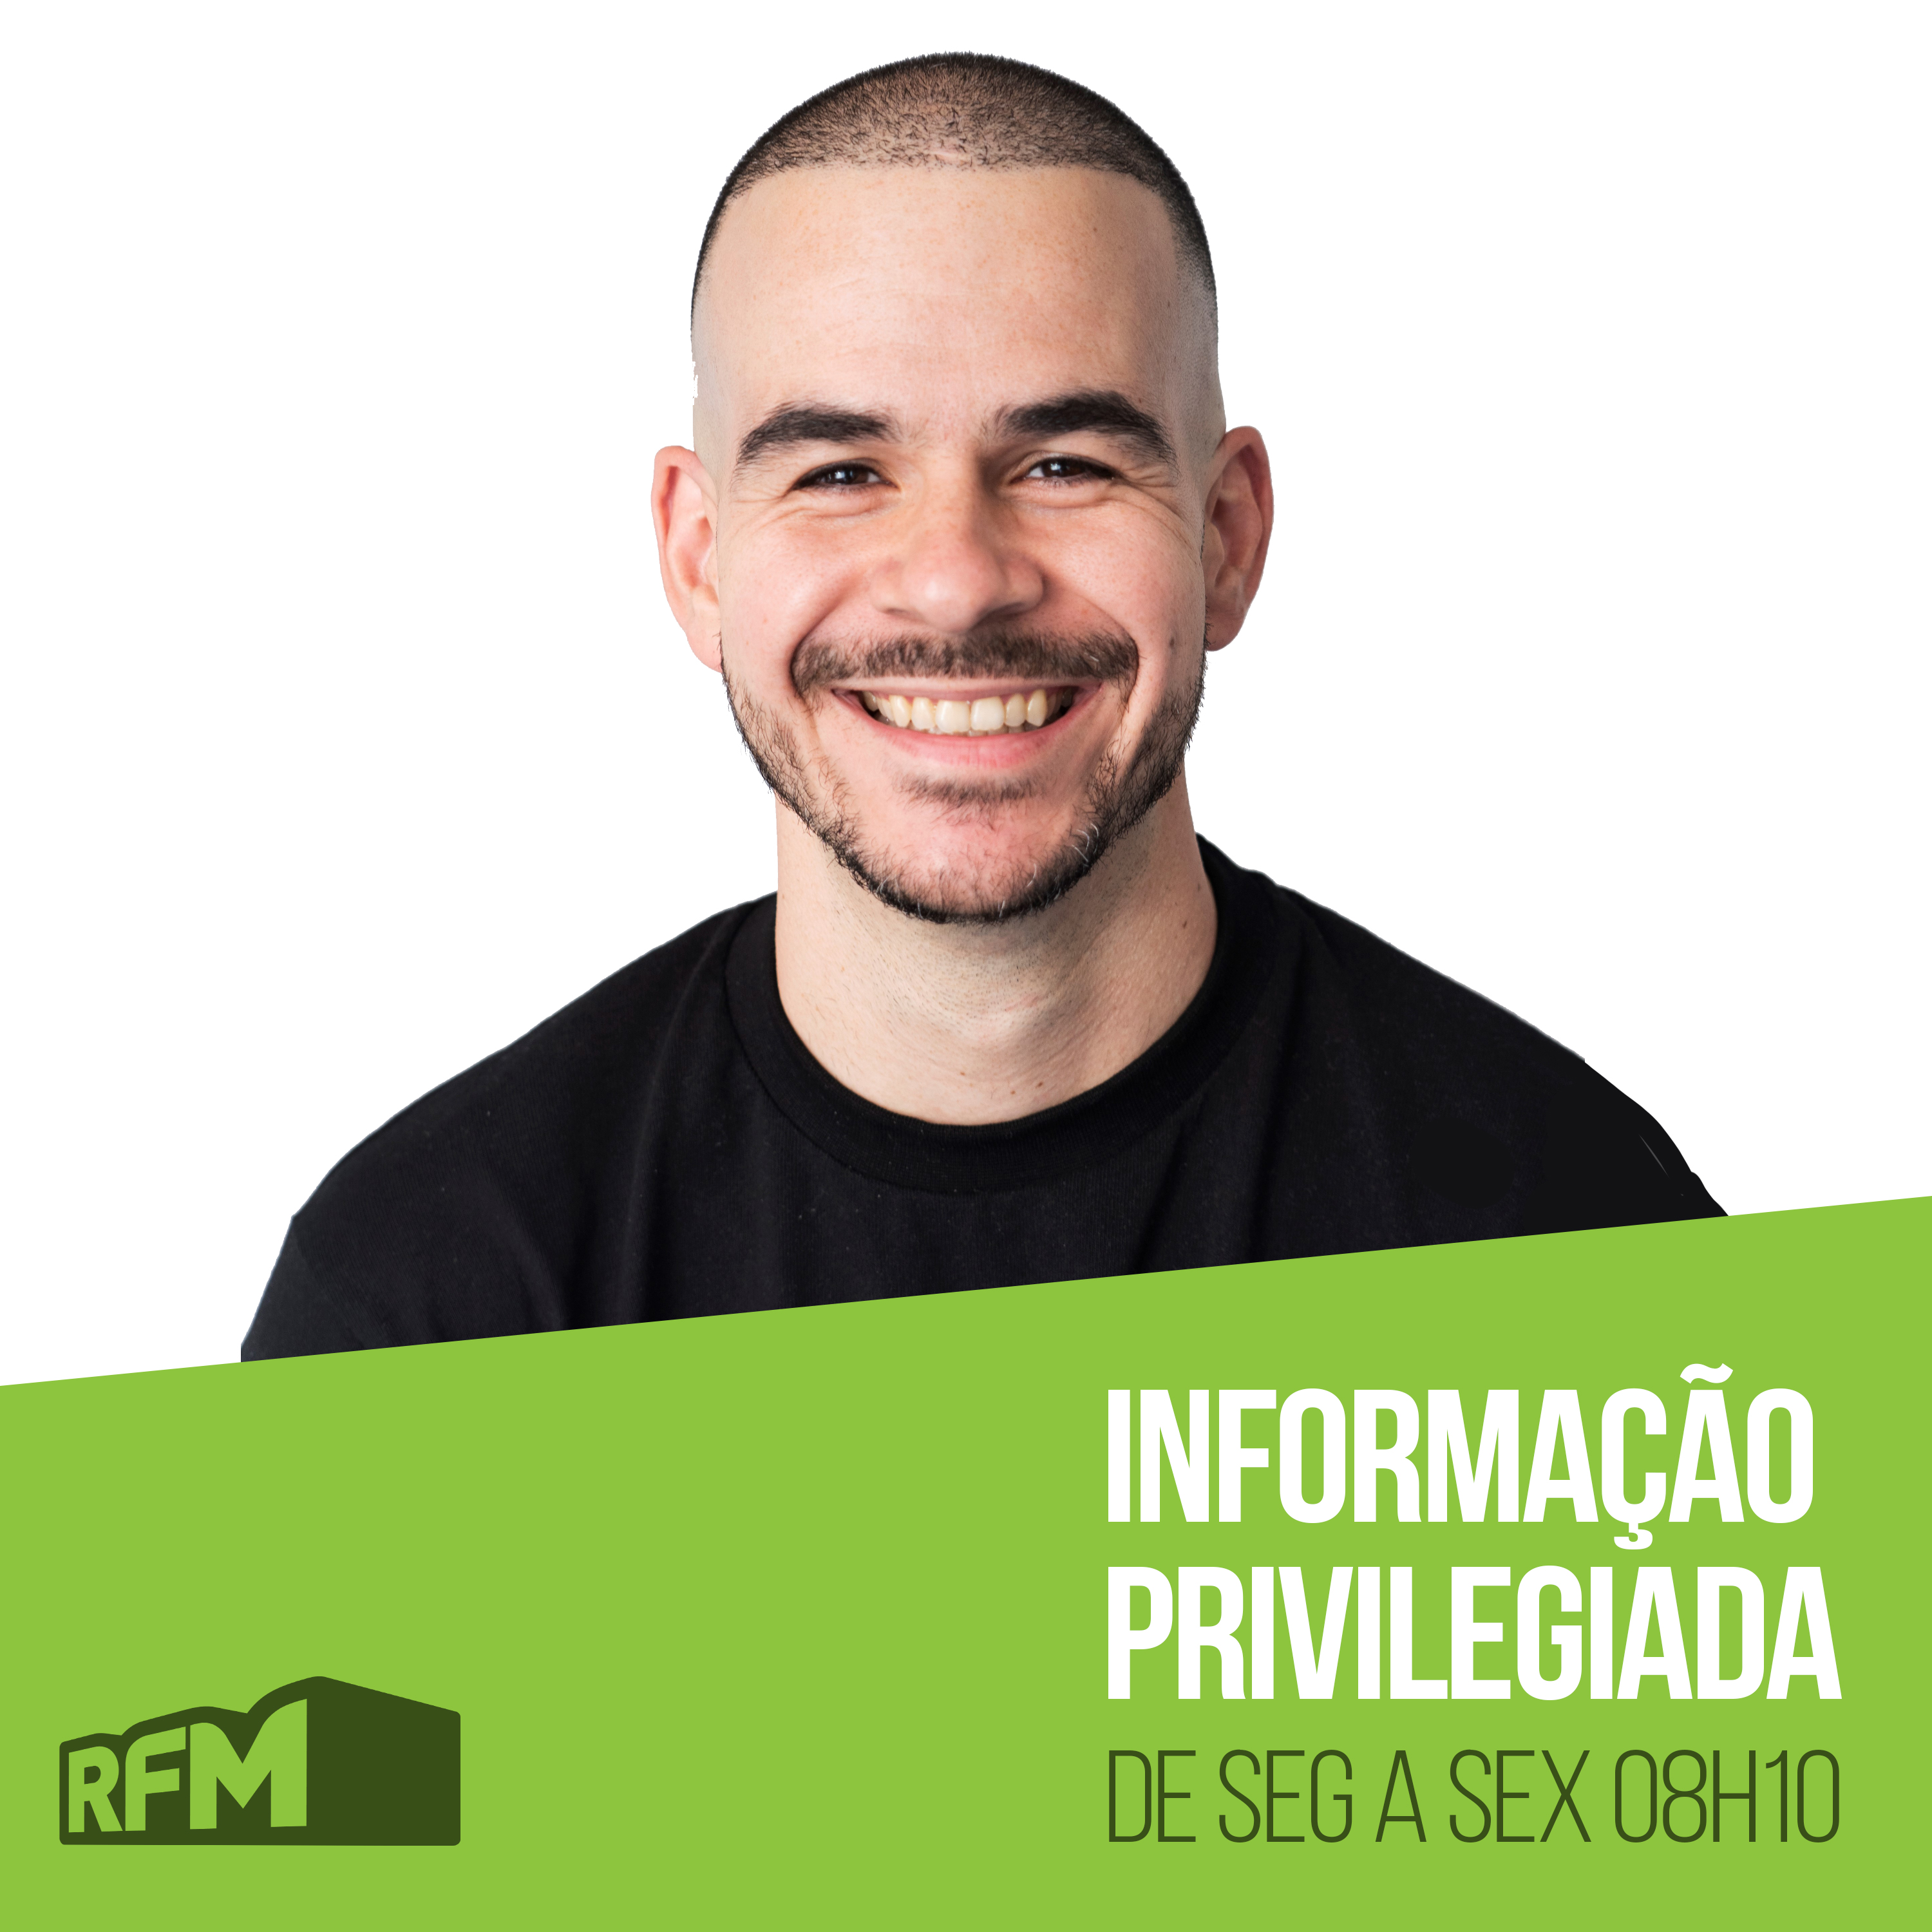 RFM - Informação Privilegiada: O ADVOGADO DE SANDRA CELAS